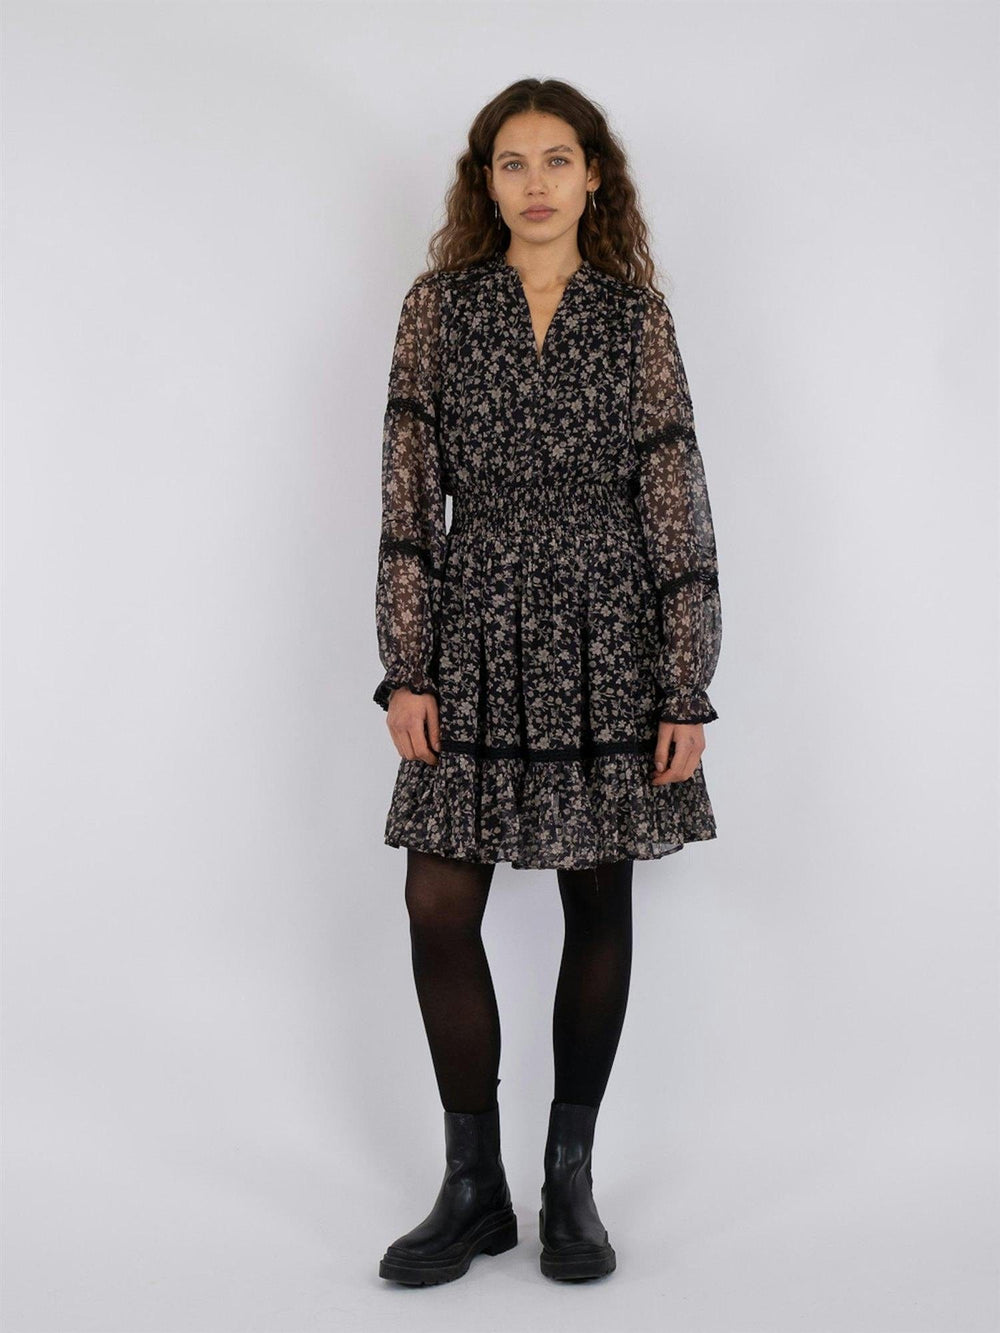 Evanna Fleur Sombre Dress Black | Kjoler | Smuk - Dameklær på nett